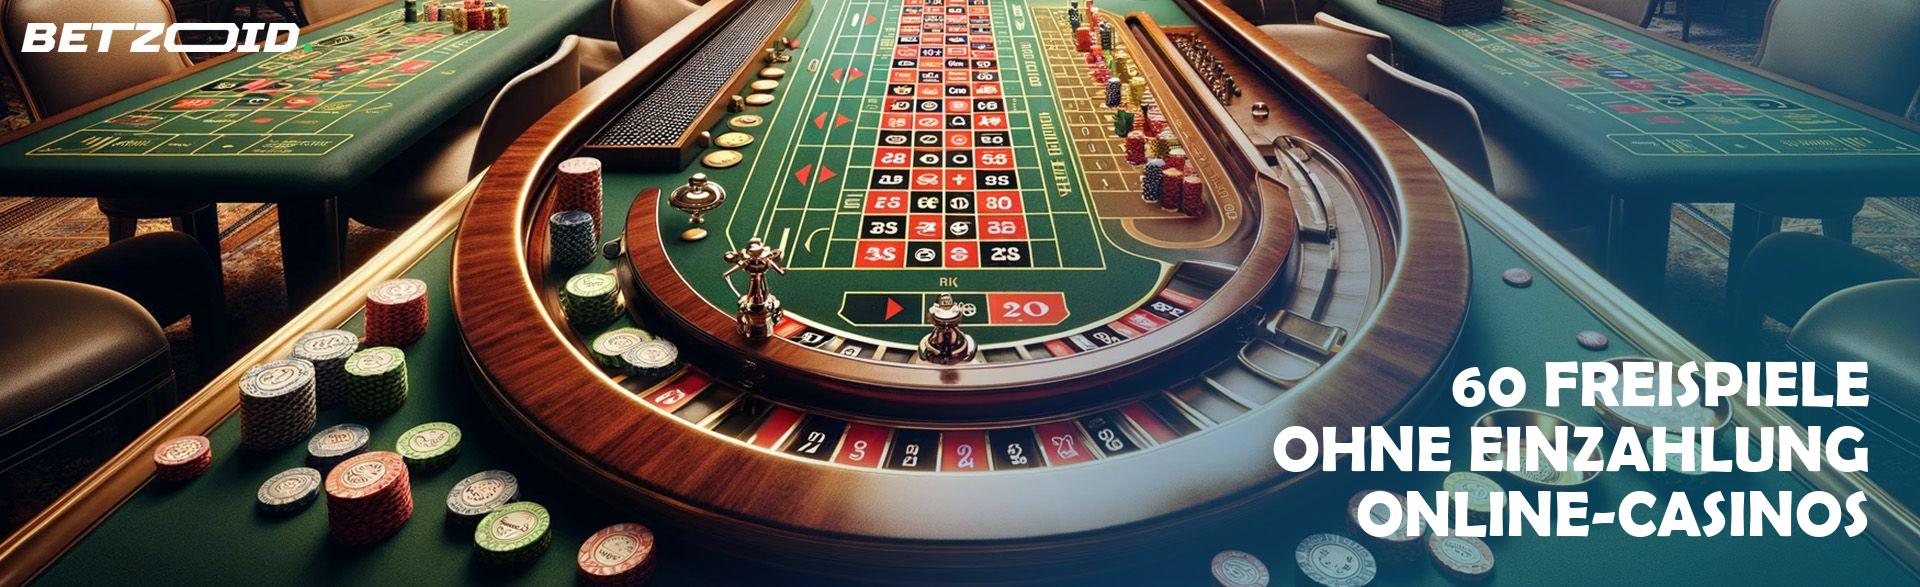 Casinos Online Hoffnungen und Träume